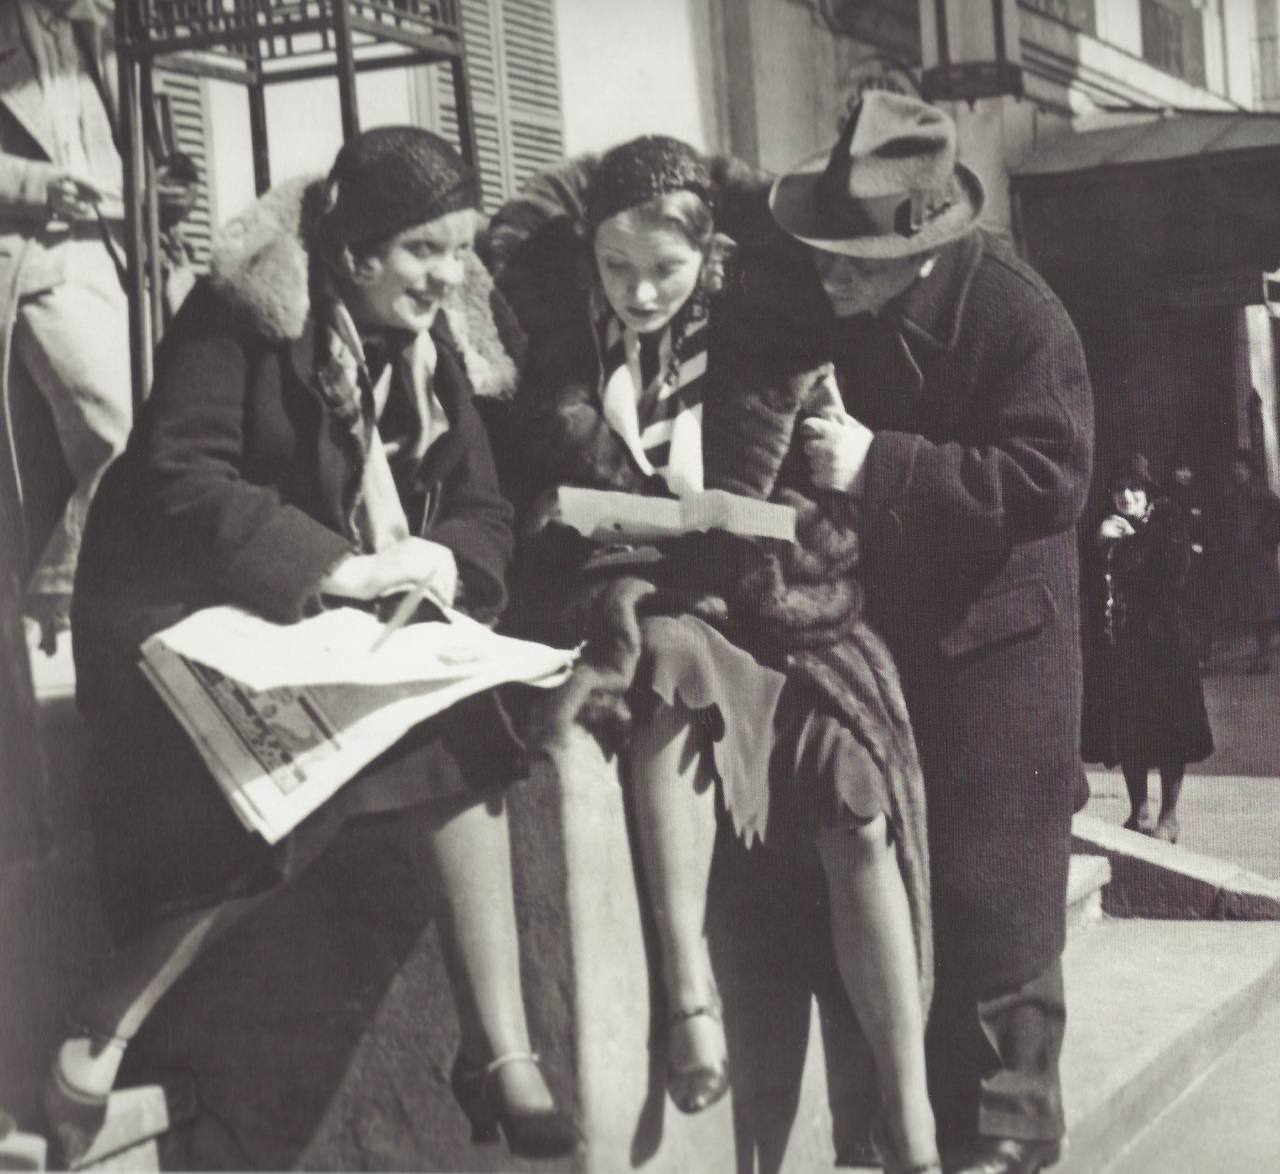 1930. Марлен Дитрих читает статью критика в газете